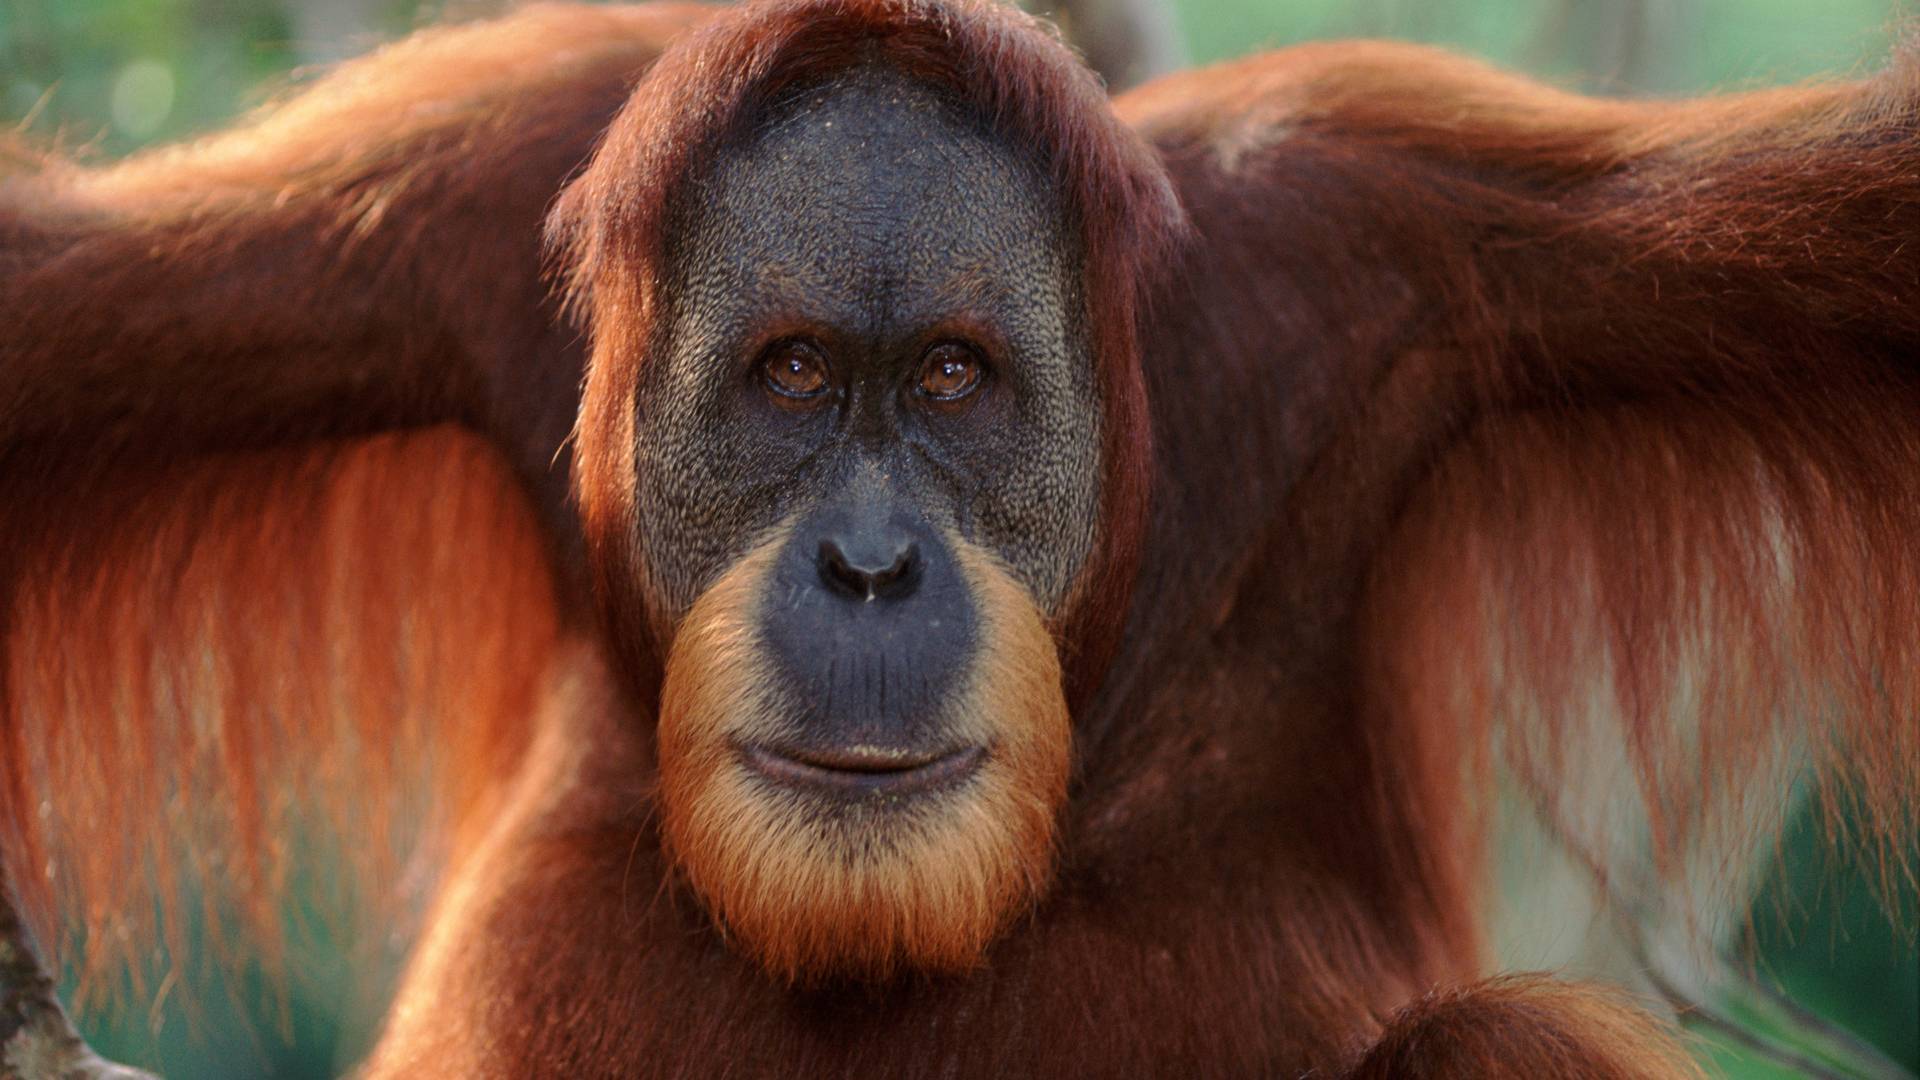 Ritratto di un orangutan di Sumatra, Sumatra, in Indonesia